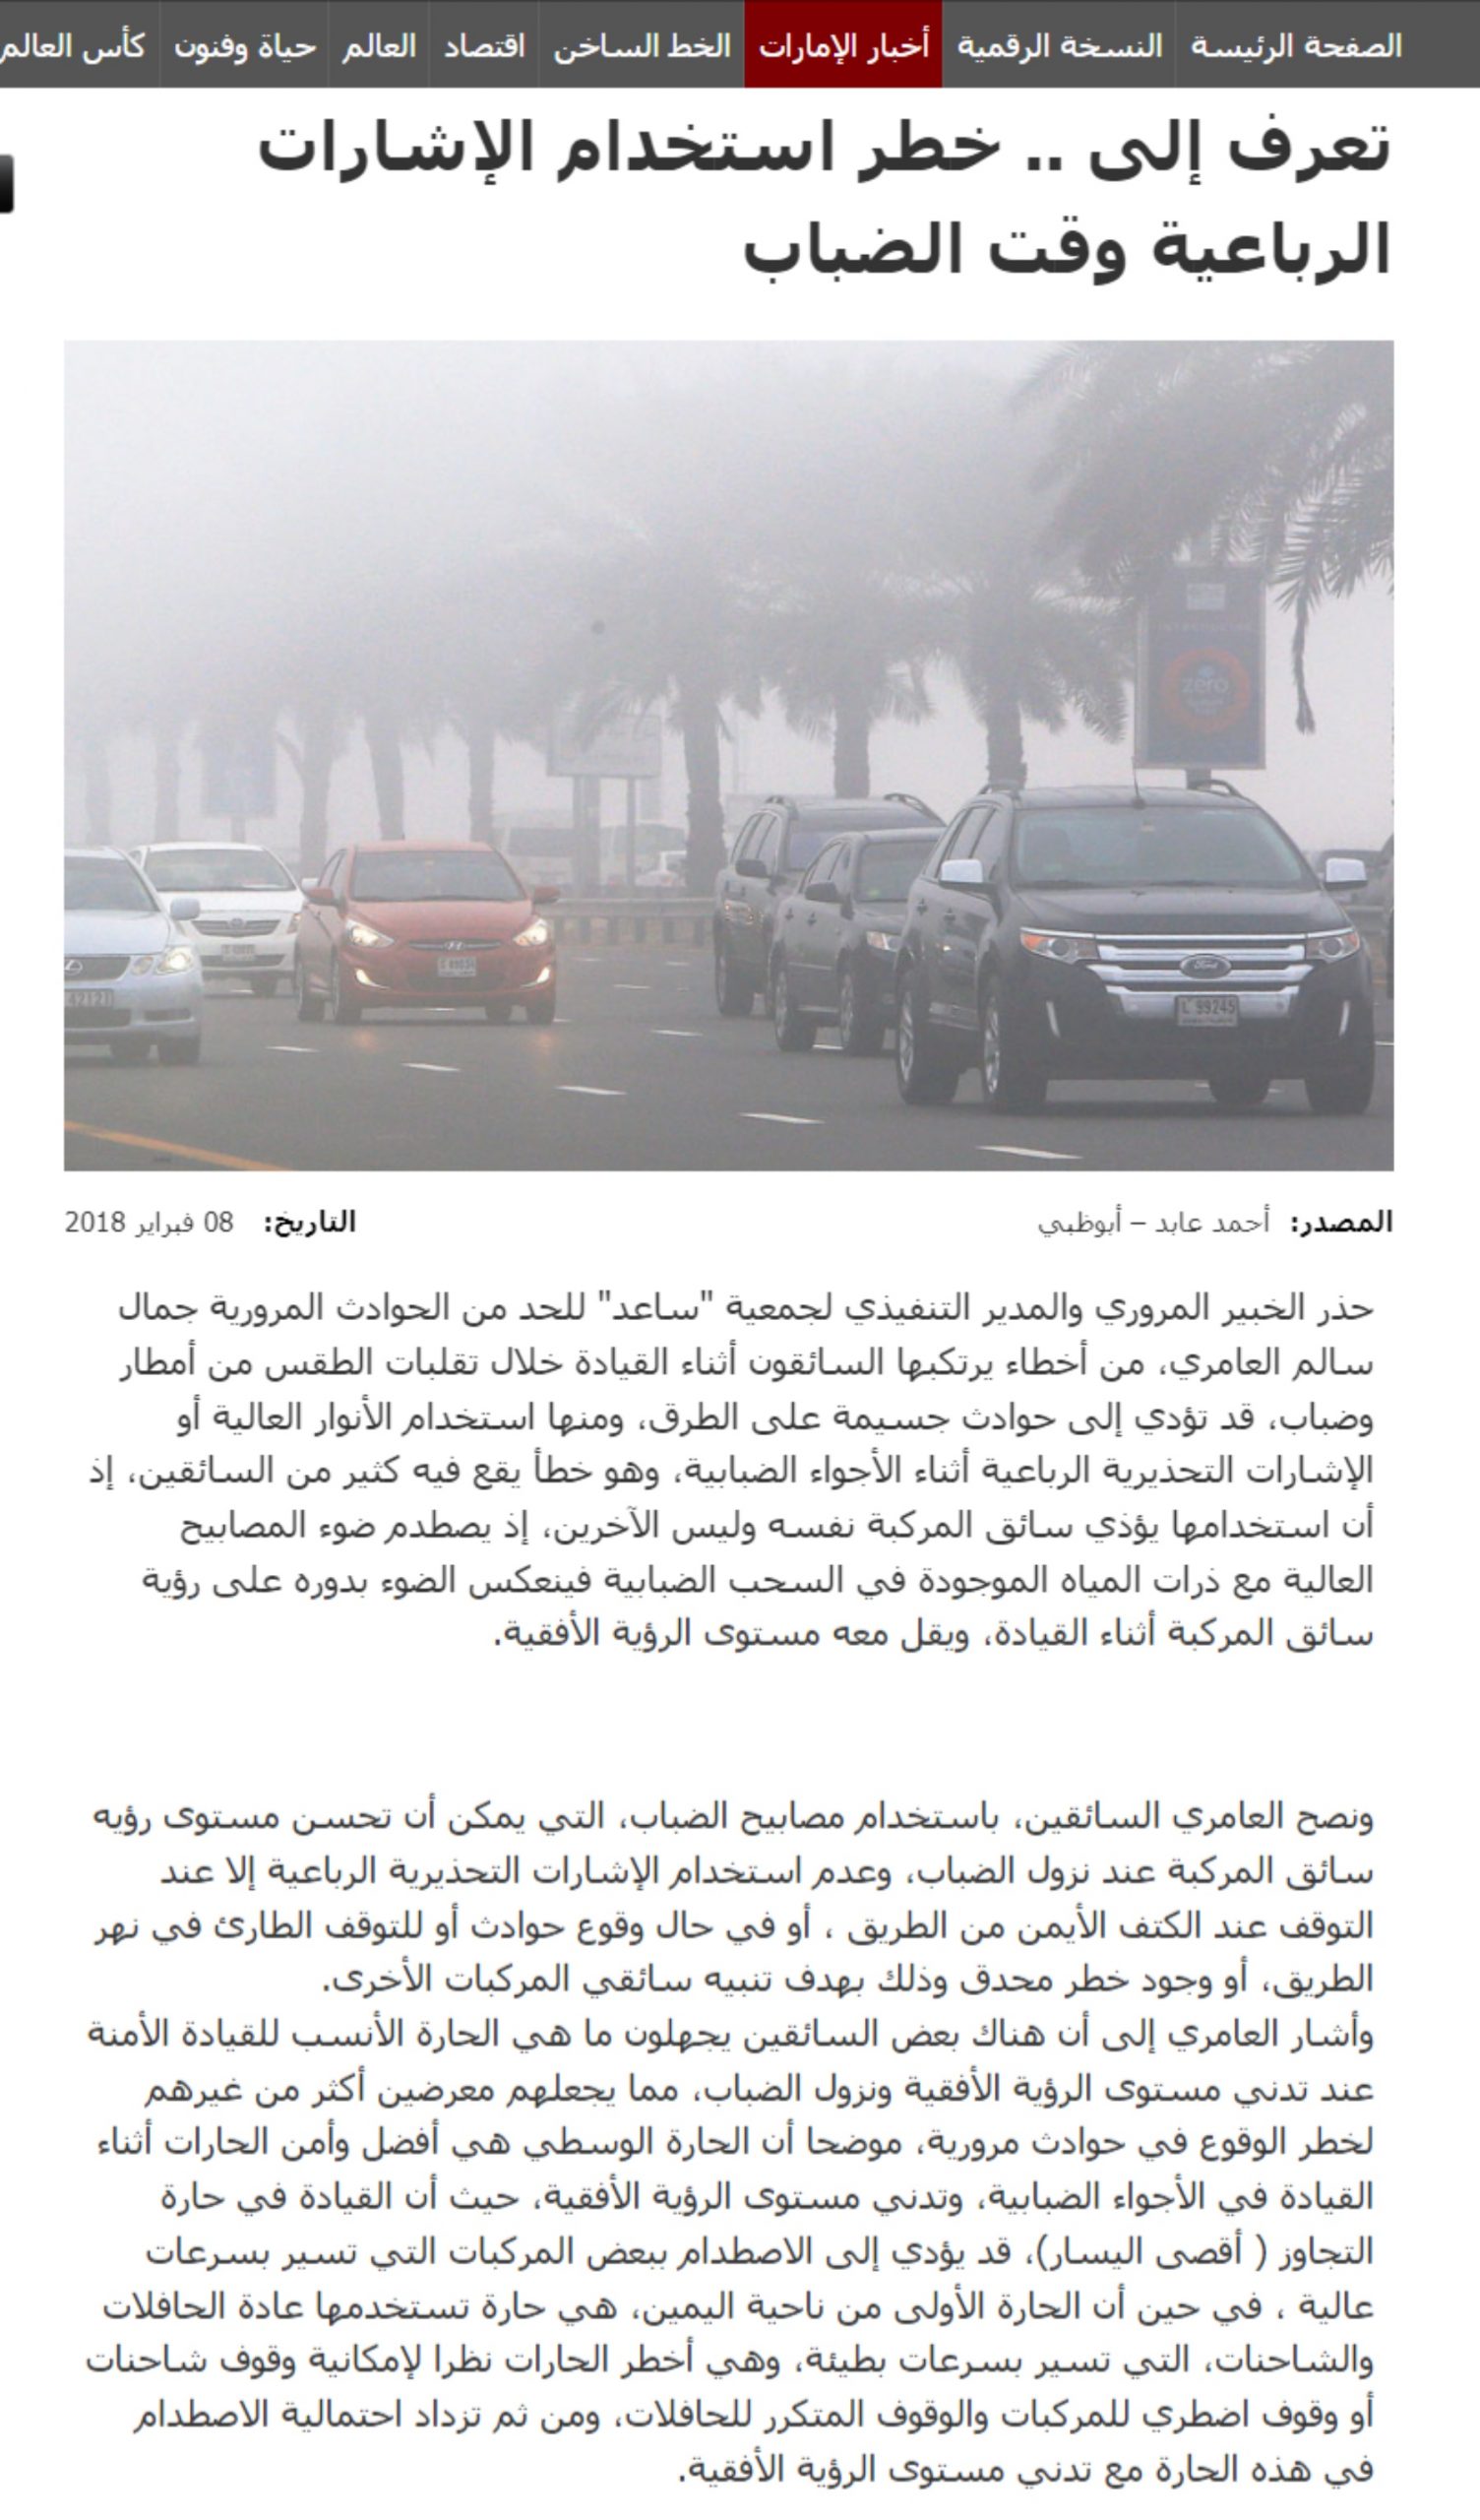 لماذا المرور السعودي يسمح باستخدام الأضواء التحذيرية “فلشر” بينما في بقية الدول العربية ودول العالم تعتبر مخالفة؟ 4